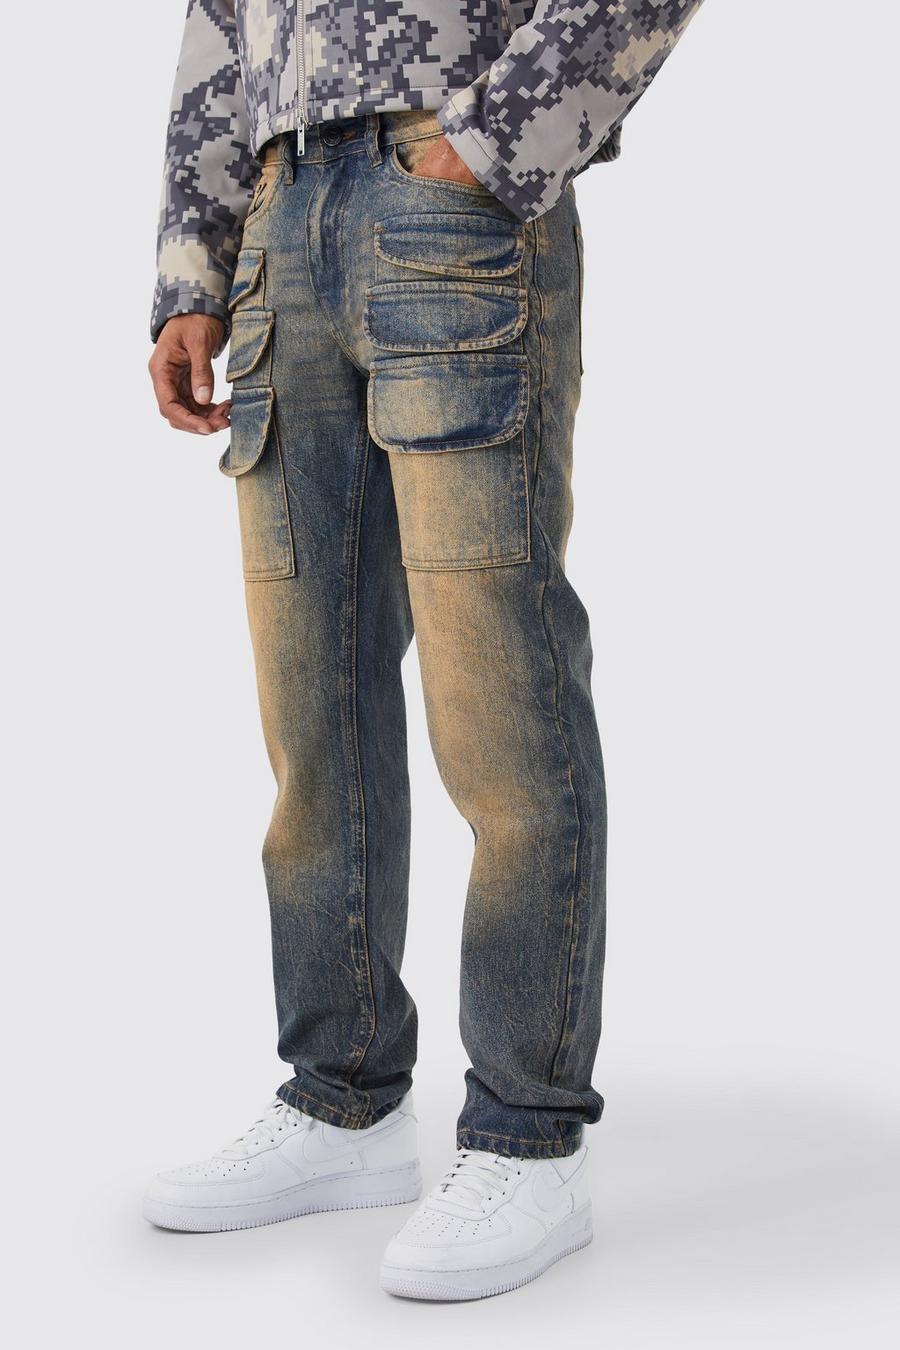 Jeans Cargo dritti in denim rigido colorato con strappi, Antique wash